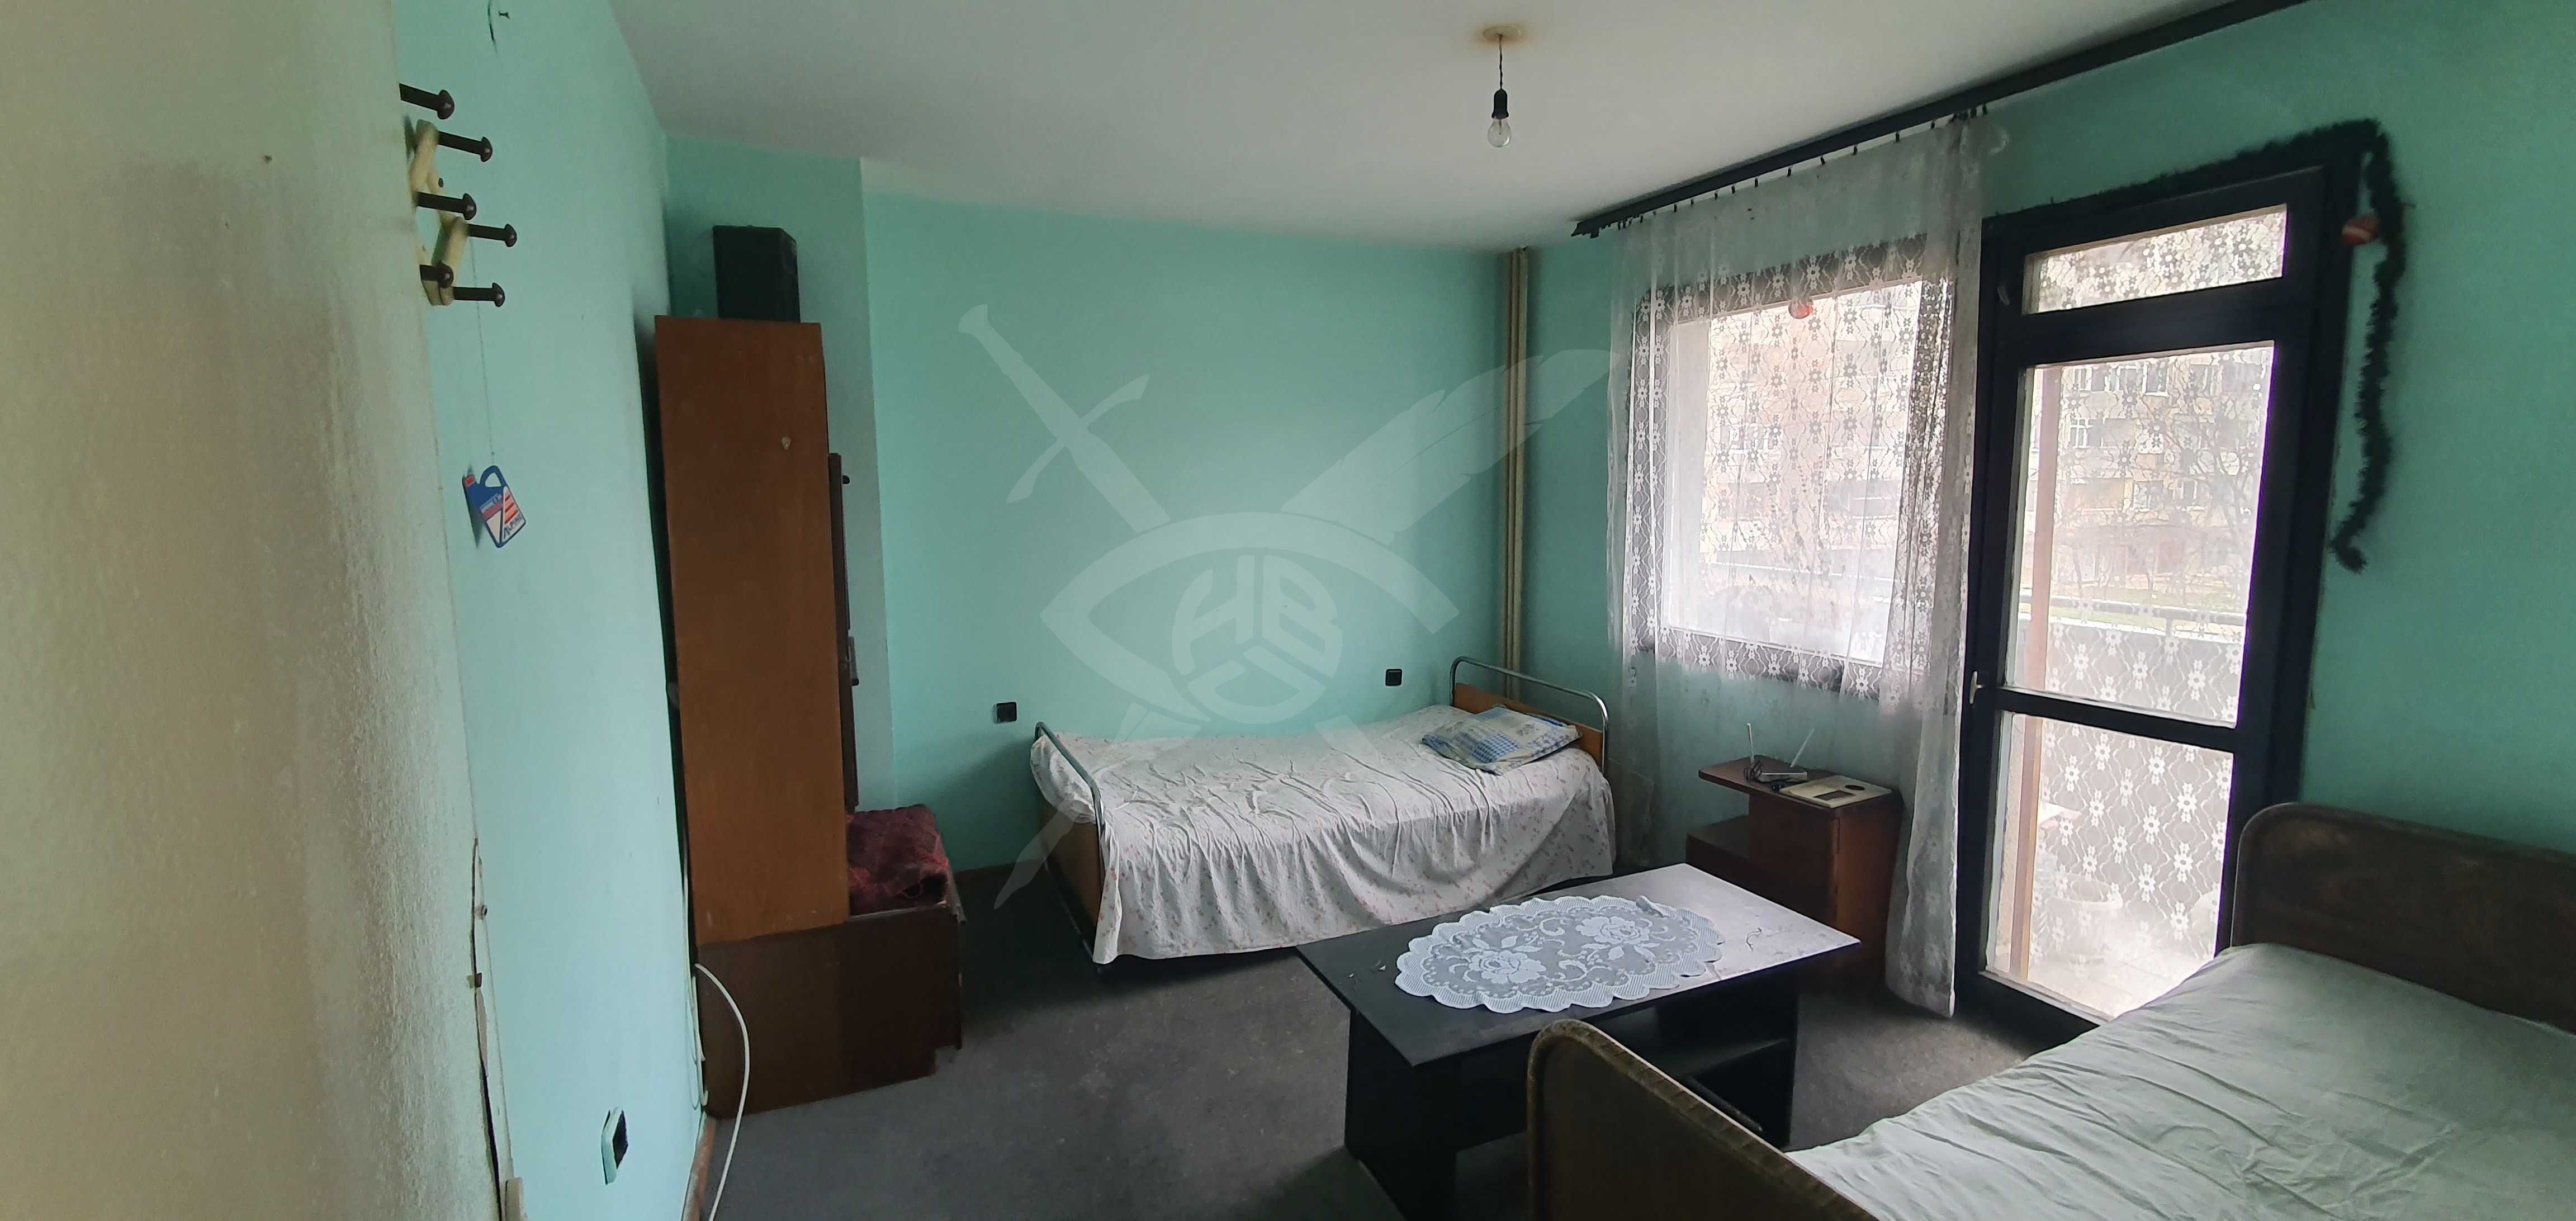 Многостаен апартамент в Каменица 2 54683